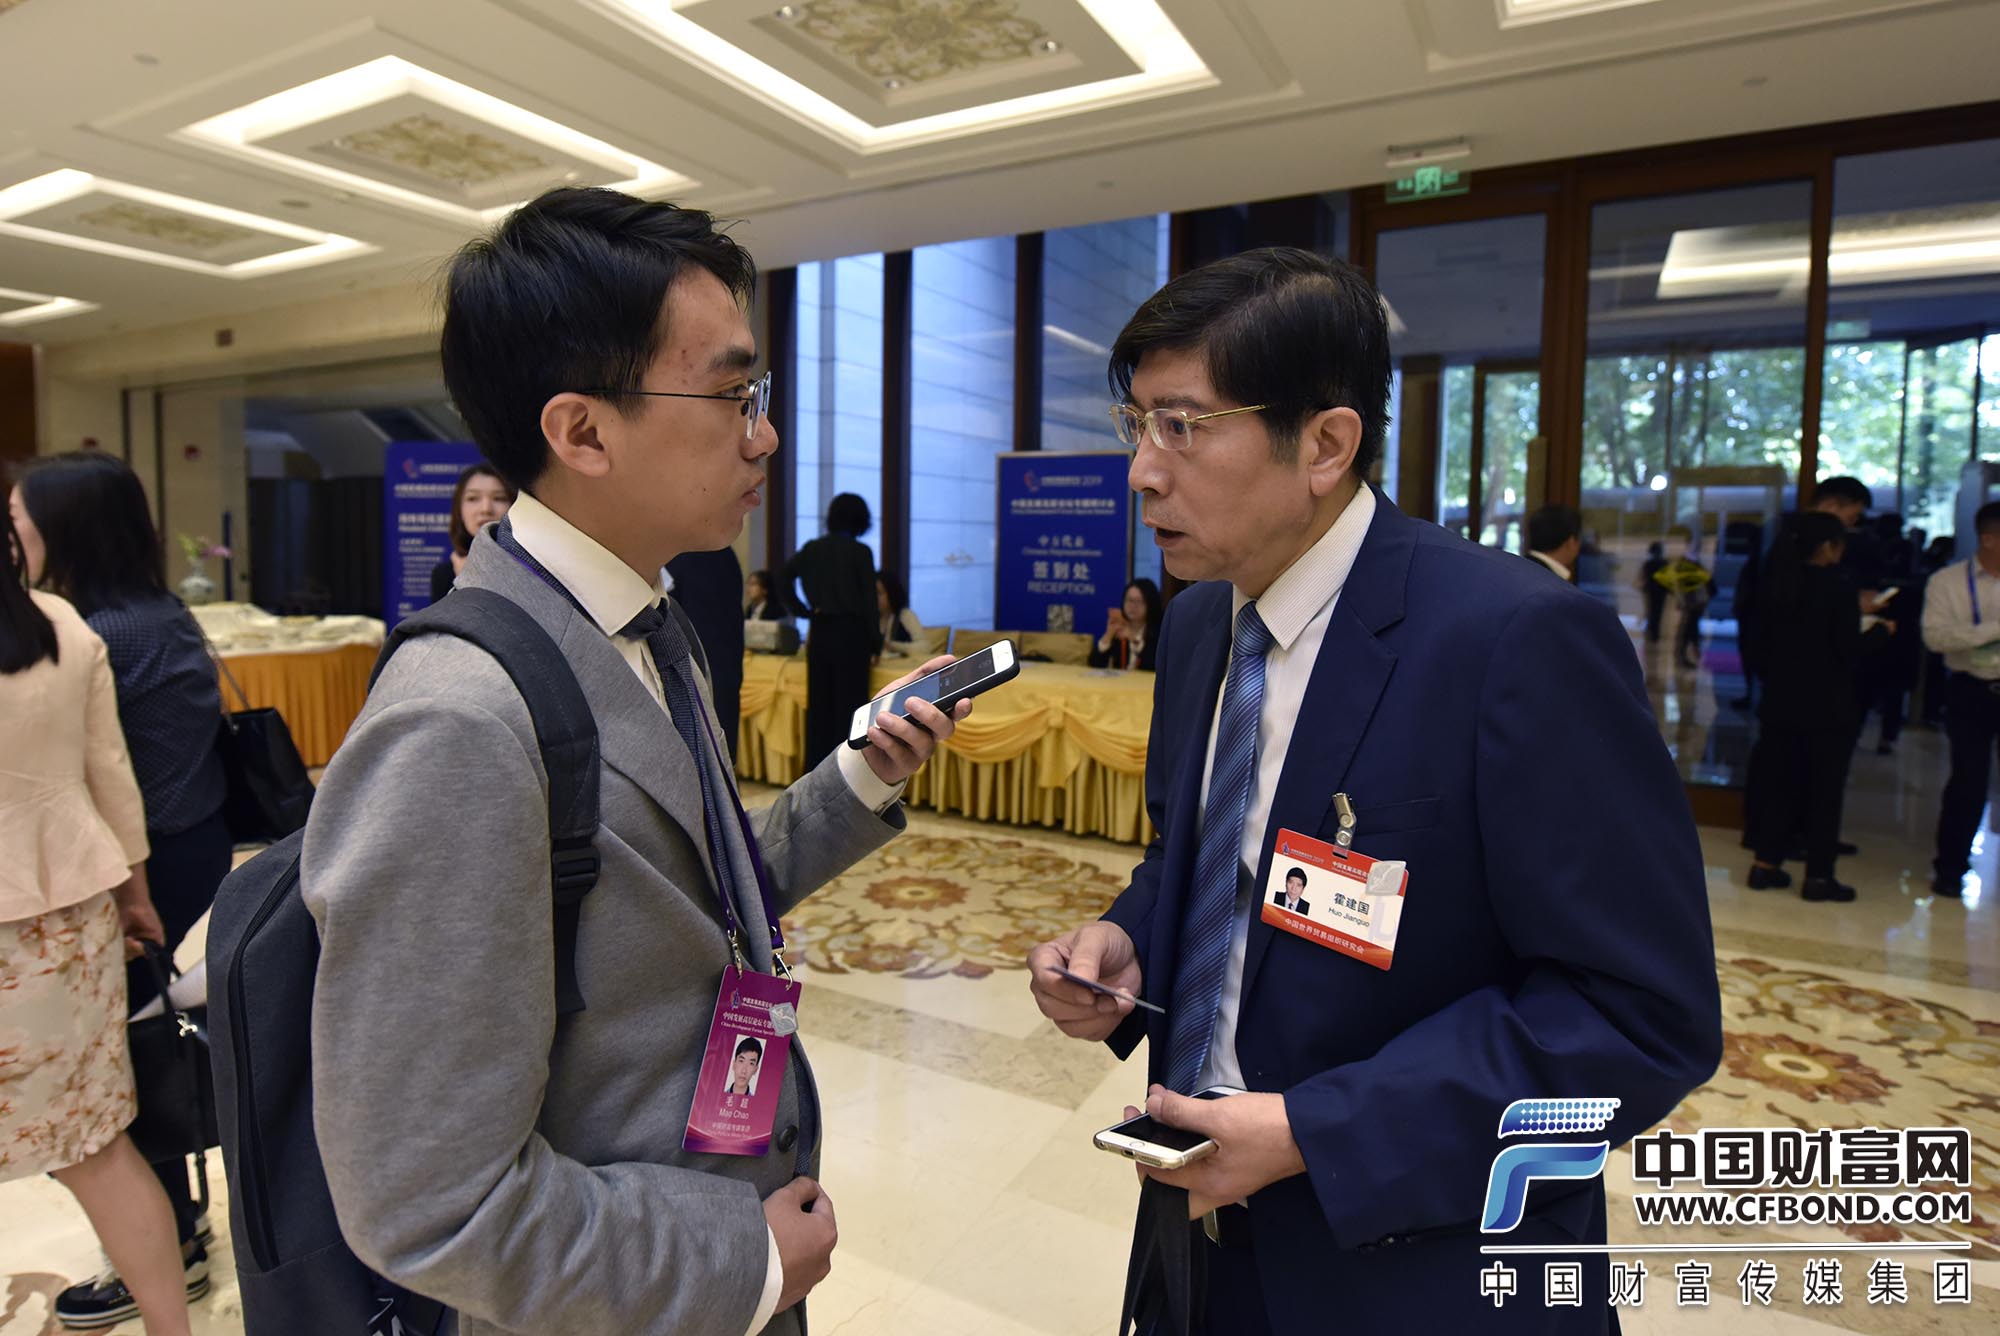 中国世界贸易组织研究会副会长霍建国接受采访